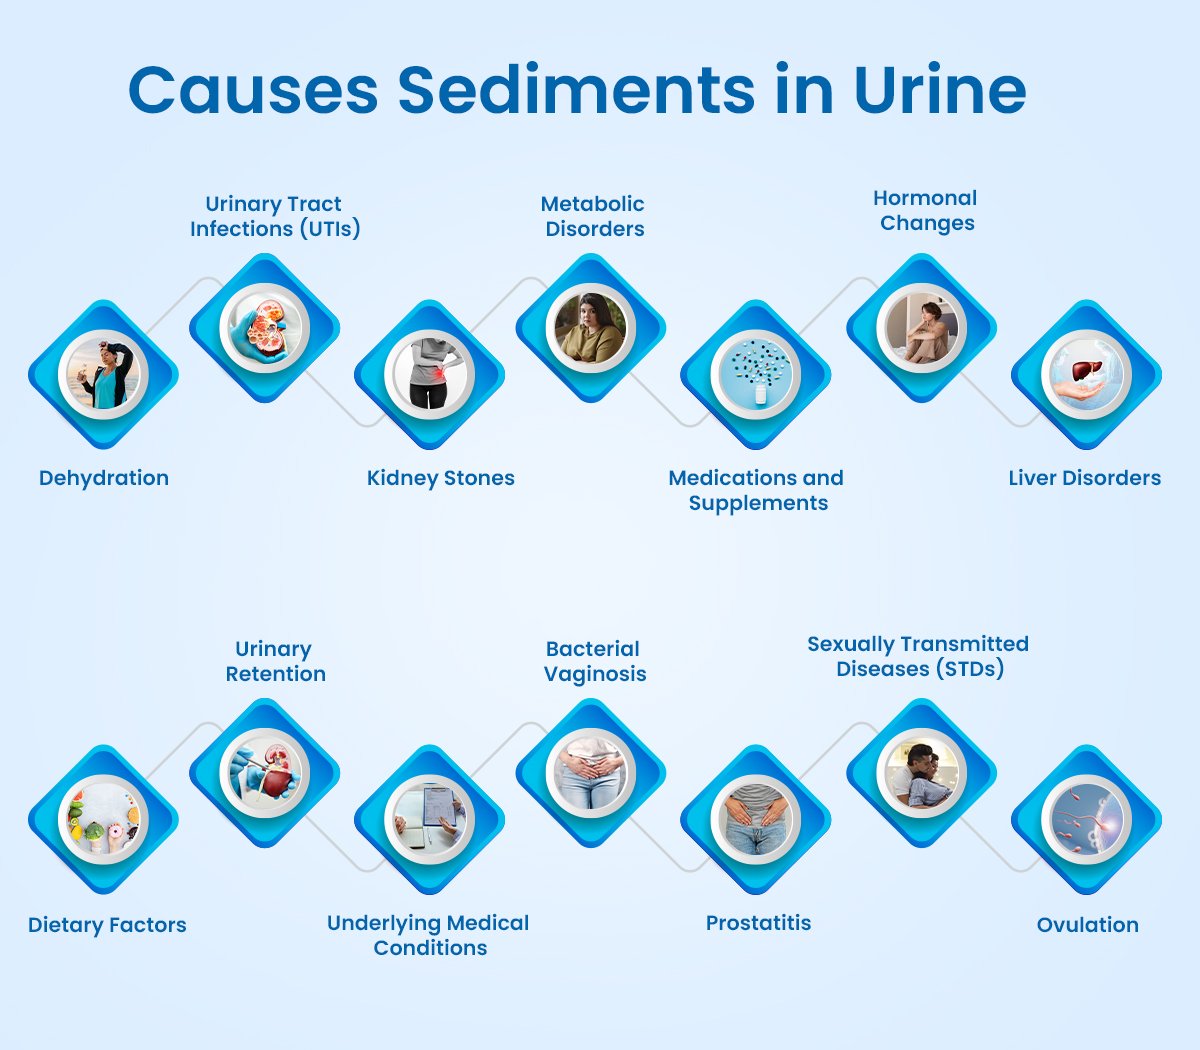 Causes of Sediment in Urine